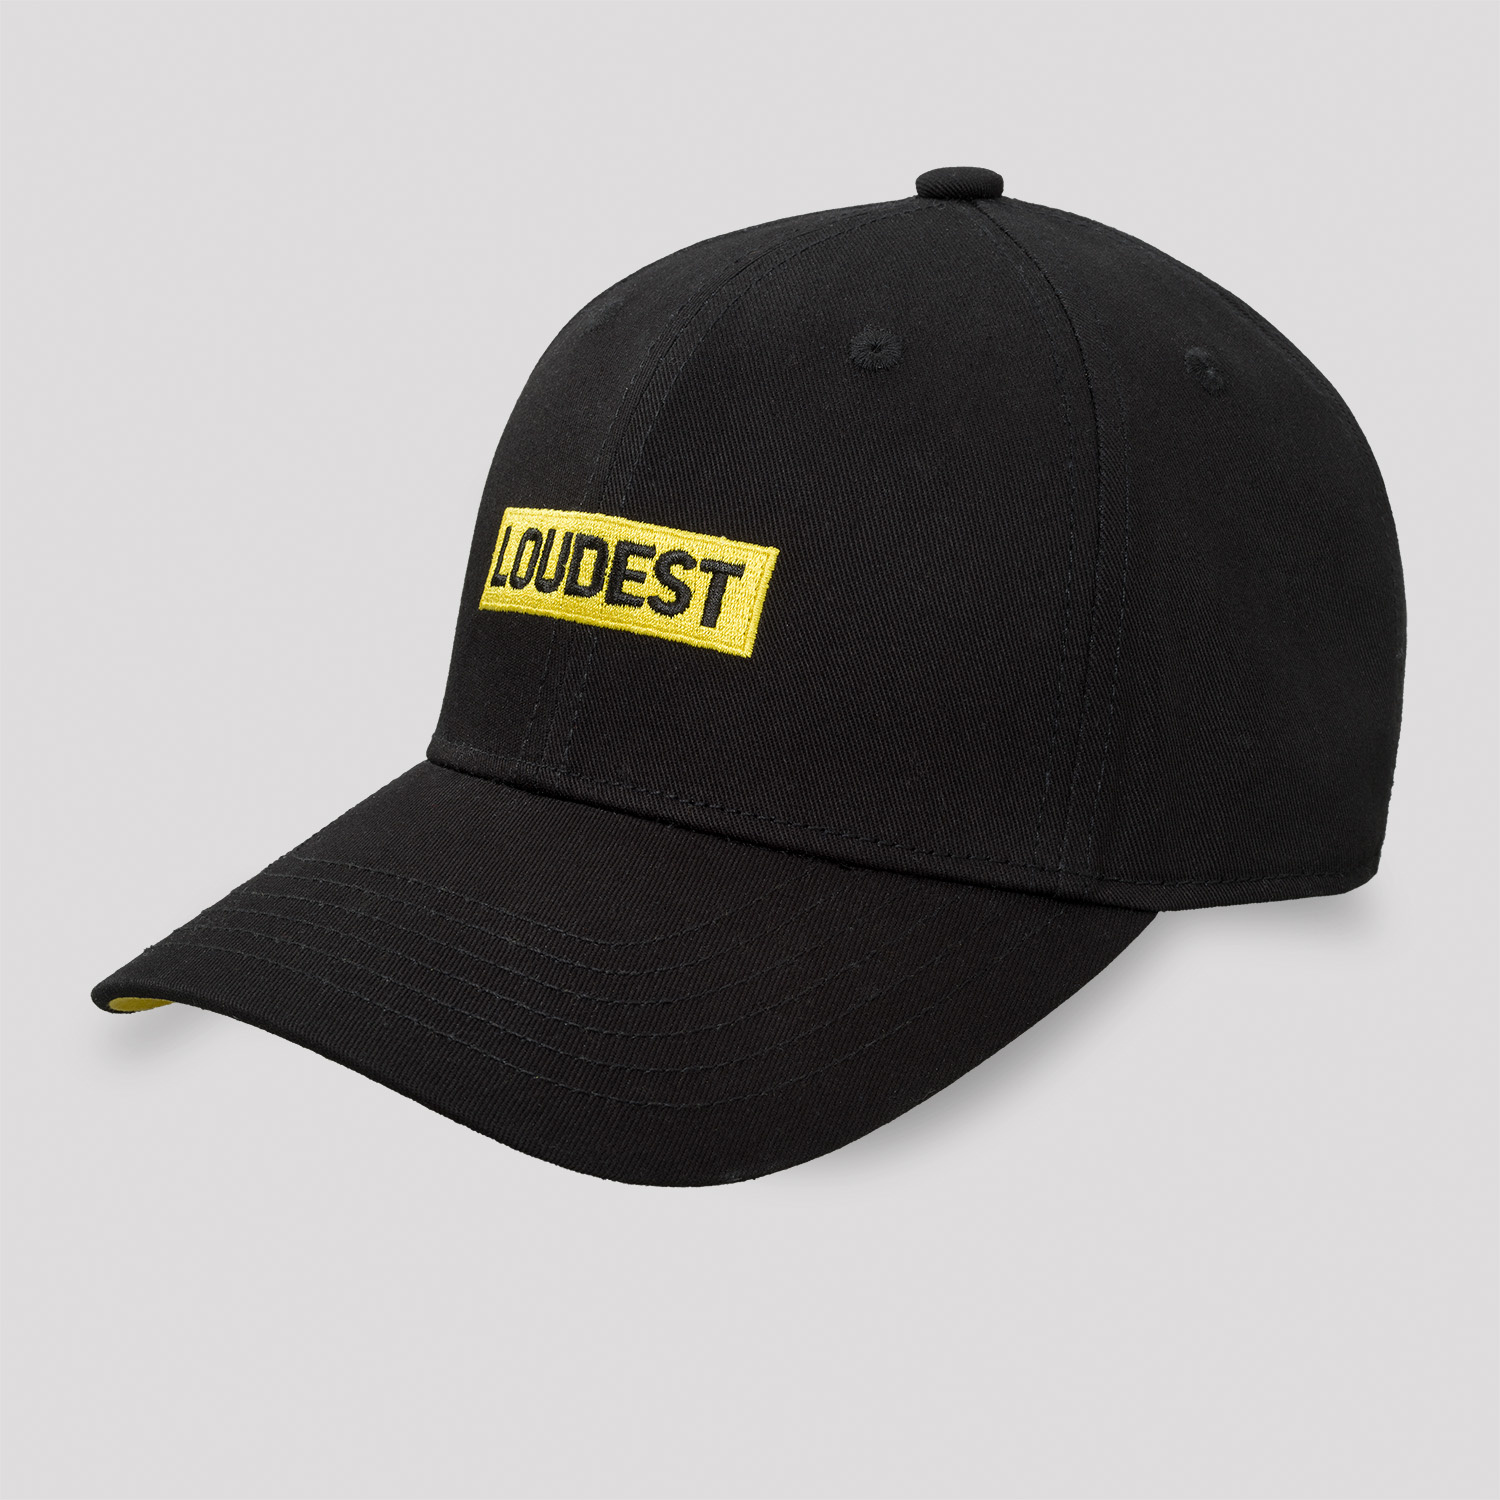 Decibel baseball cap black/yellow